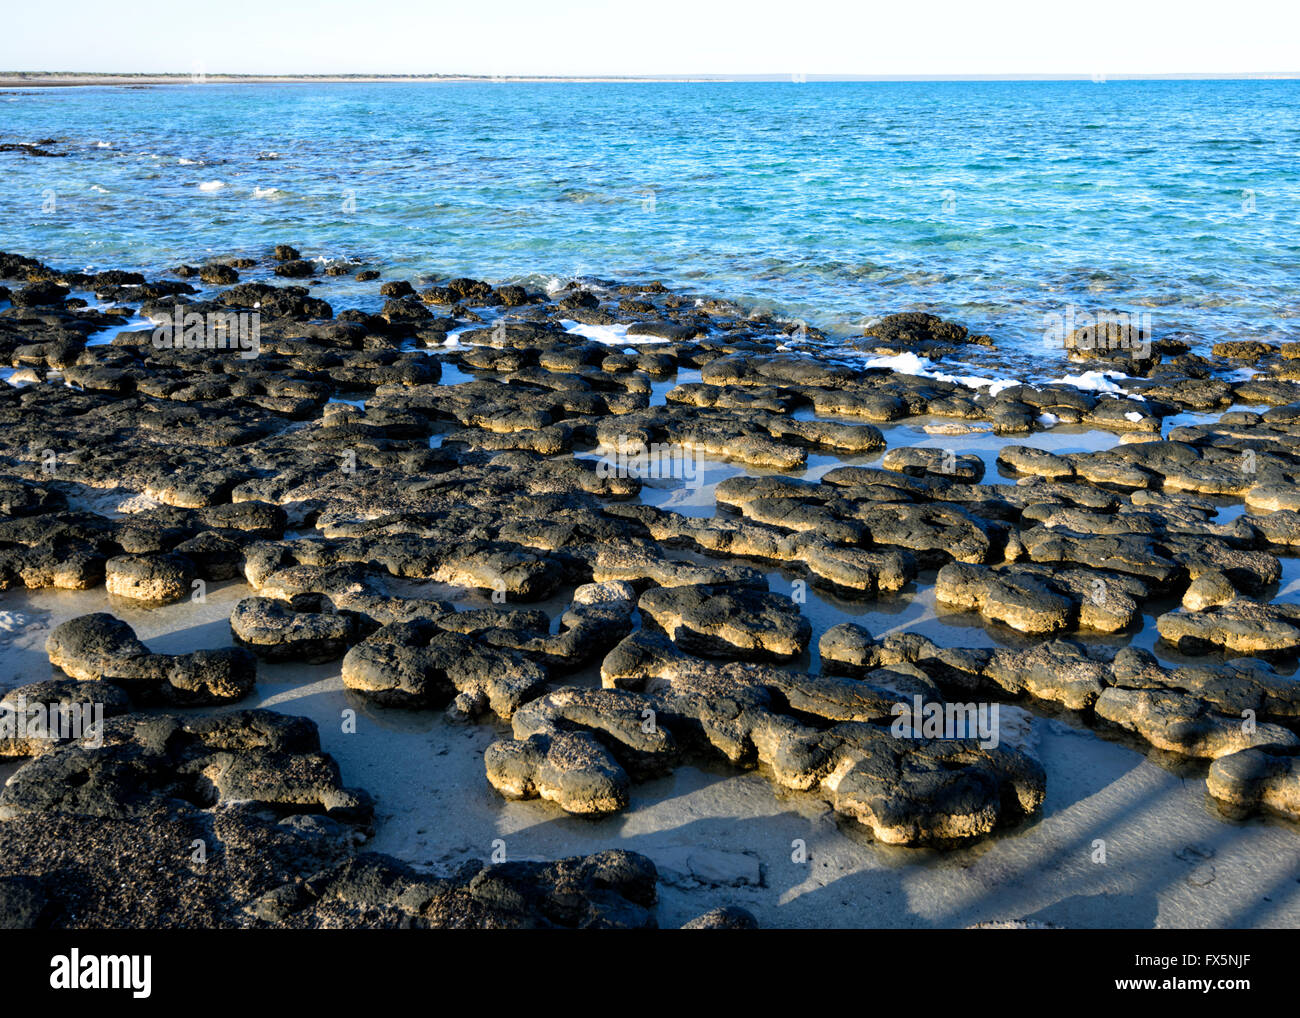 Los estromatolitos, los fósiles más antiguos que se conocen en la tierra, Hamelin Pool, Shark Bay, Australia Occidental, WA, Australia, zona declarada Patrimonio Mundial Foto de stock